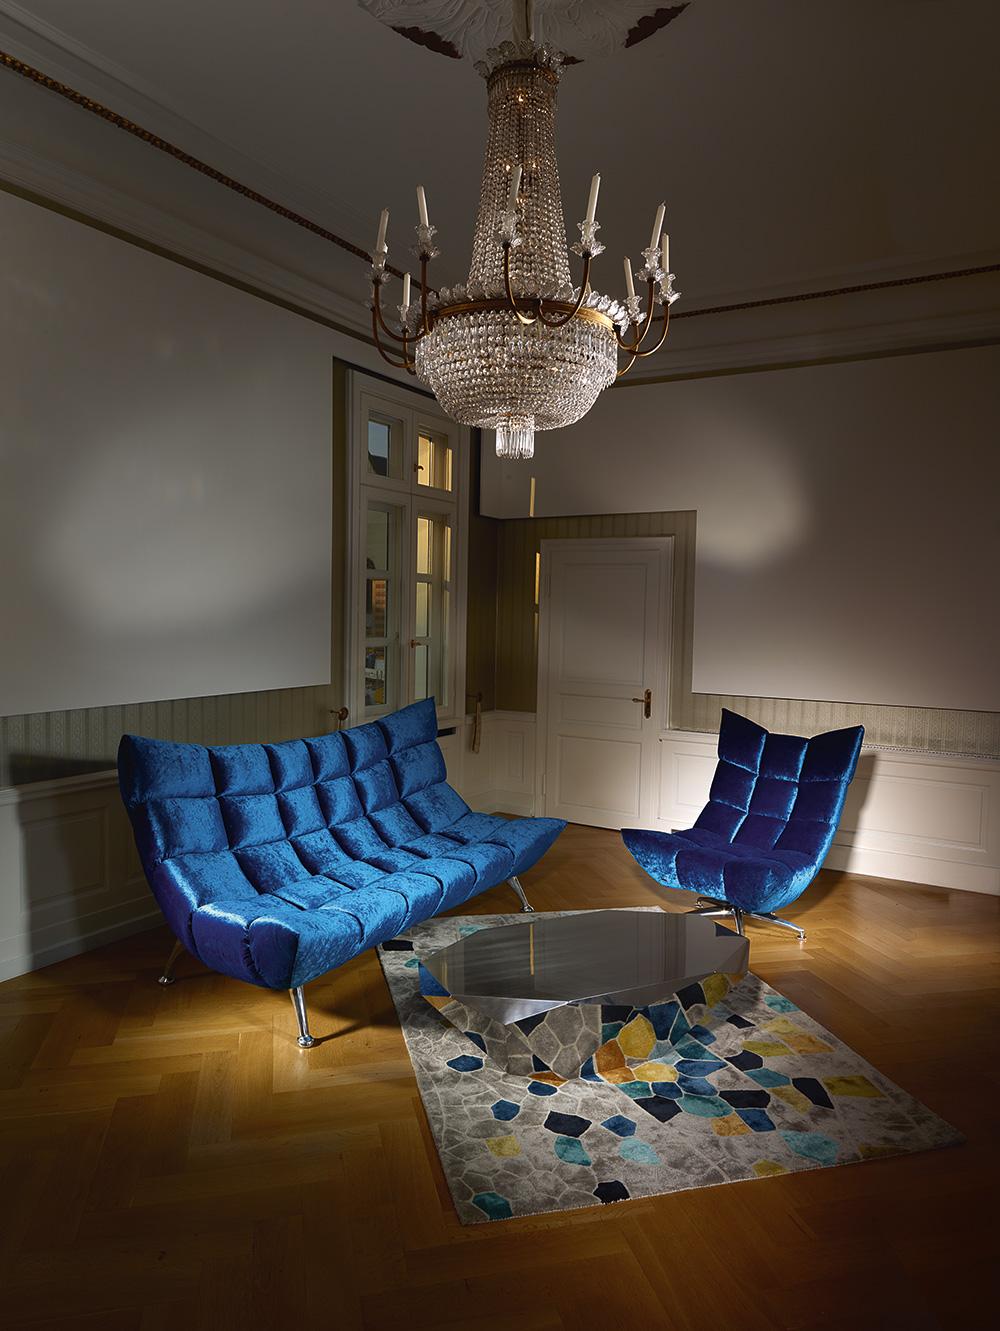 Farbenfrohe gemütliche Sitzgruppe #couchtisch #samtsofa #samtsessel #silberfarbenercouchtisch ©Bretz, Design: Meera Rathai